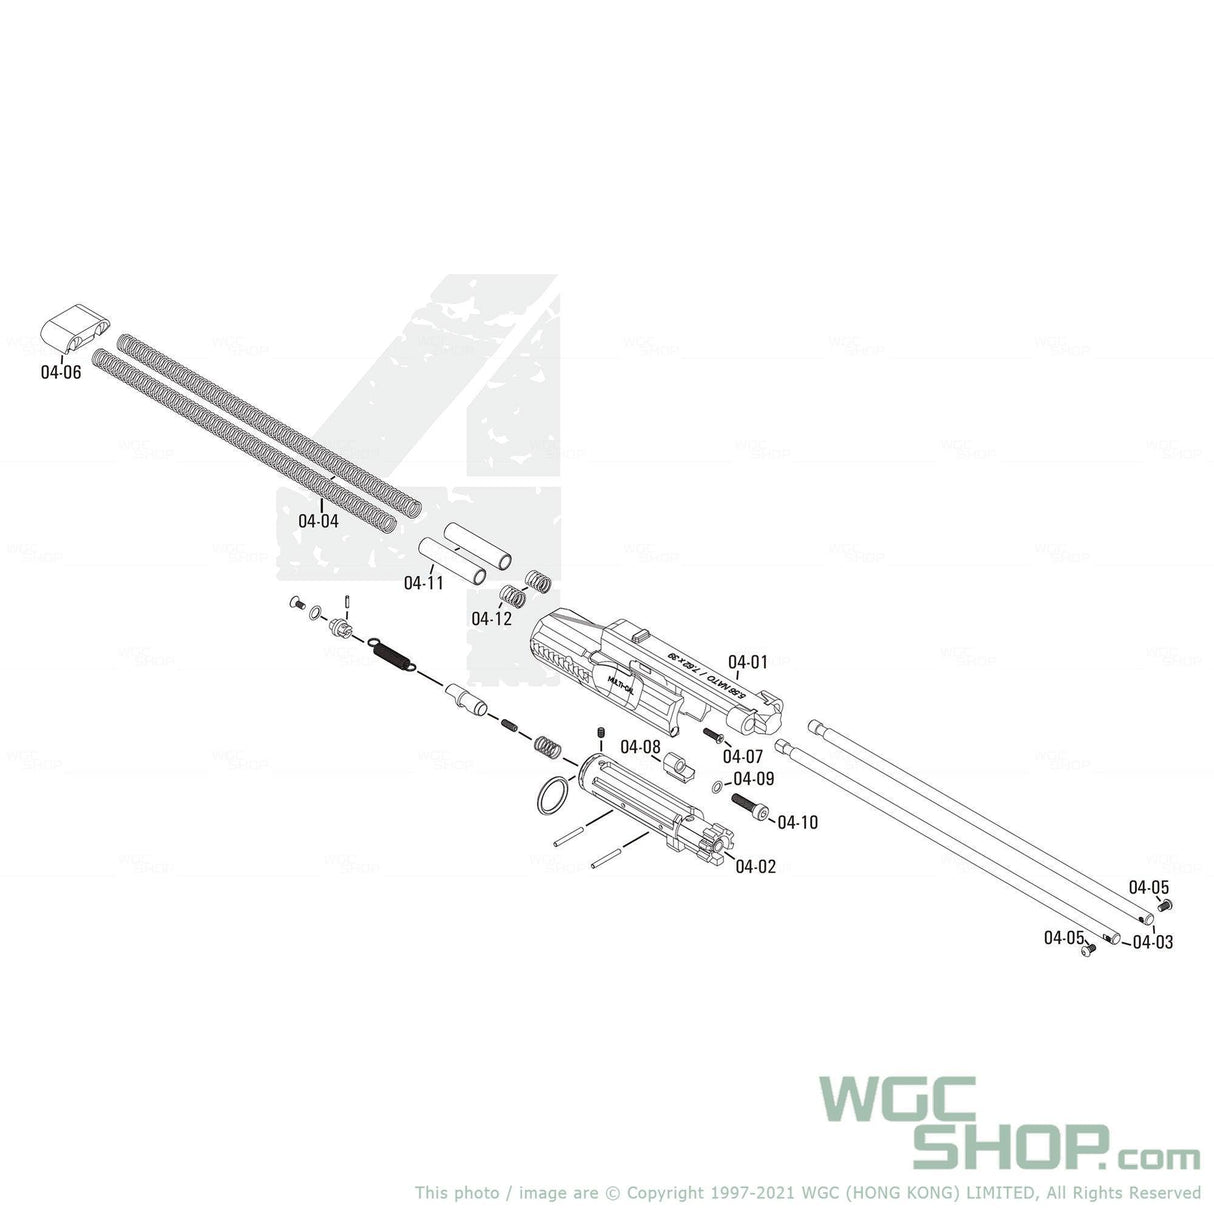 APFG Original Parts - Rattler GBB Bolt Clump Weight ( 04-11 x 2 ) - WGC Shop